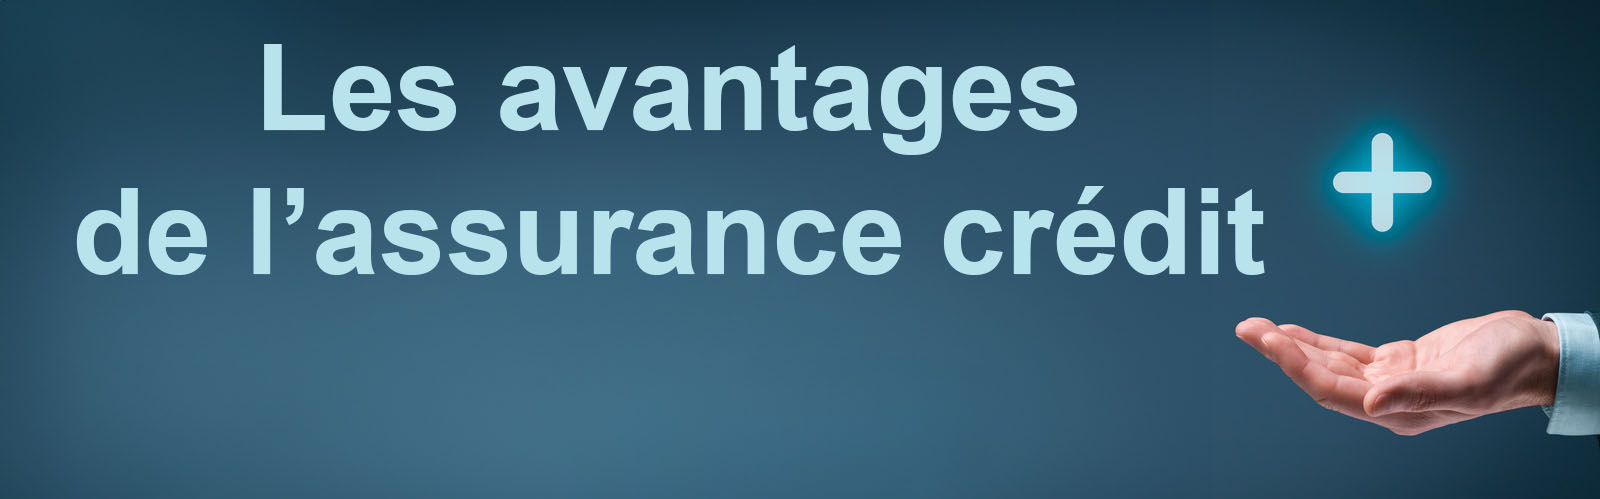 Les avantages de l'assurance-crédit